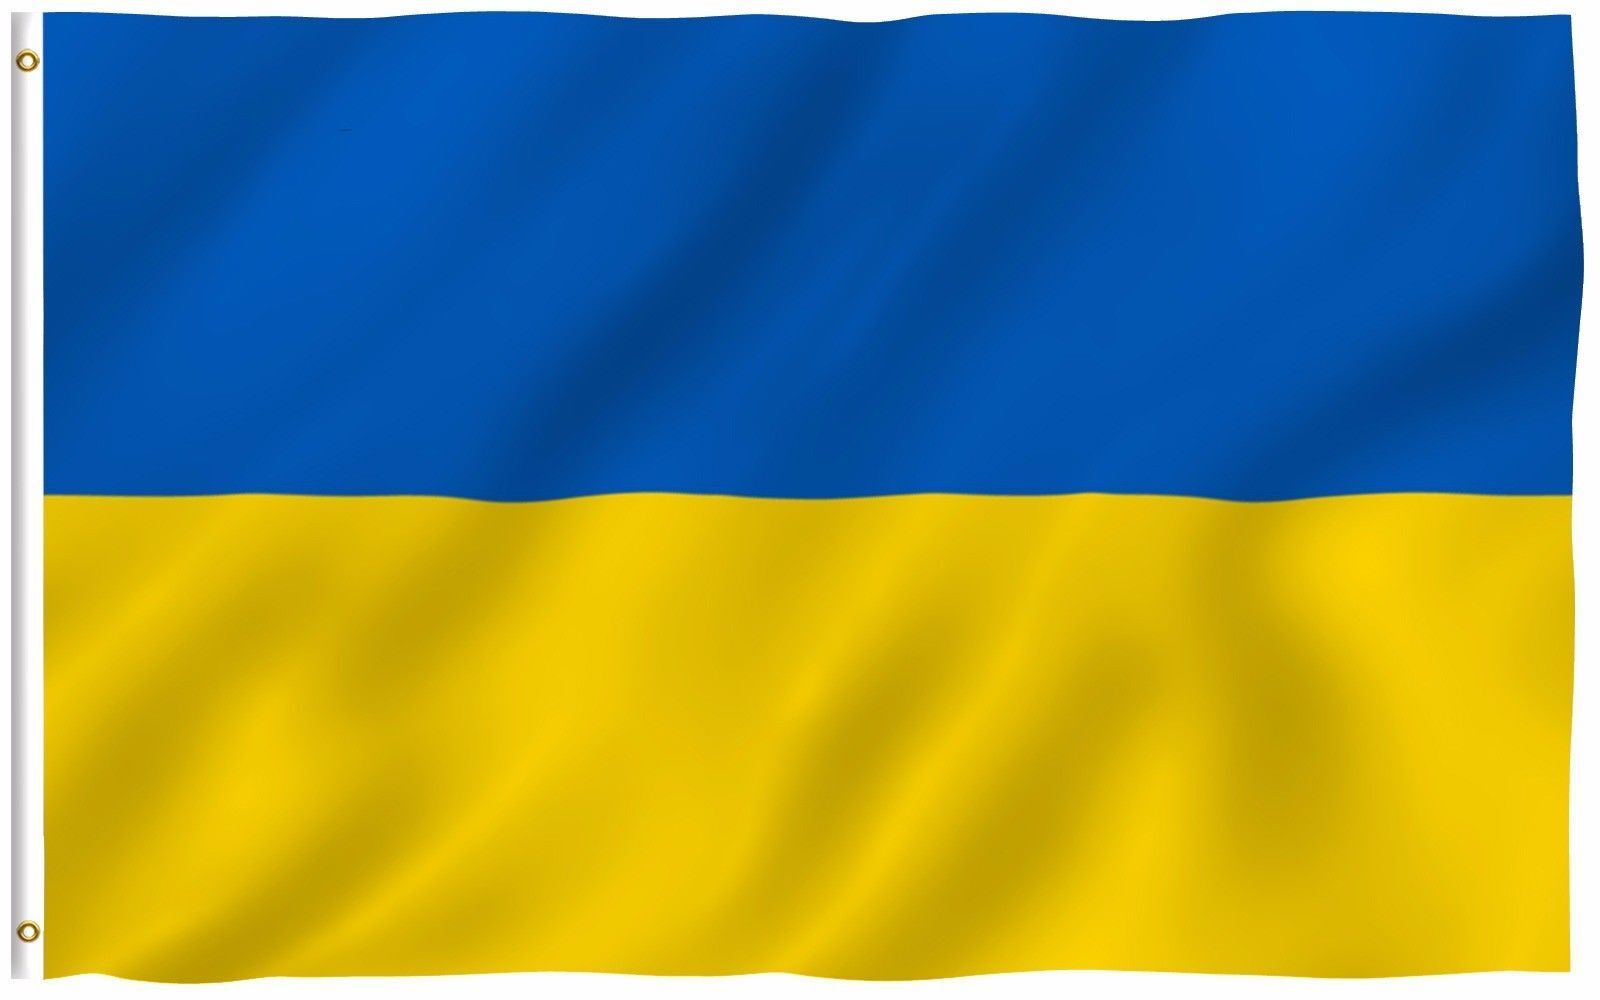 NEW 3x5ft UKRAINE UKRAINIAN double sided FLAG better quality usa seller